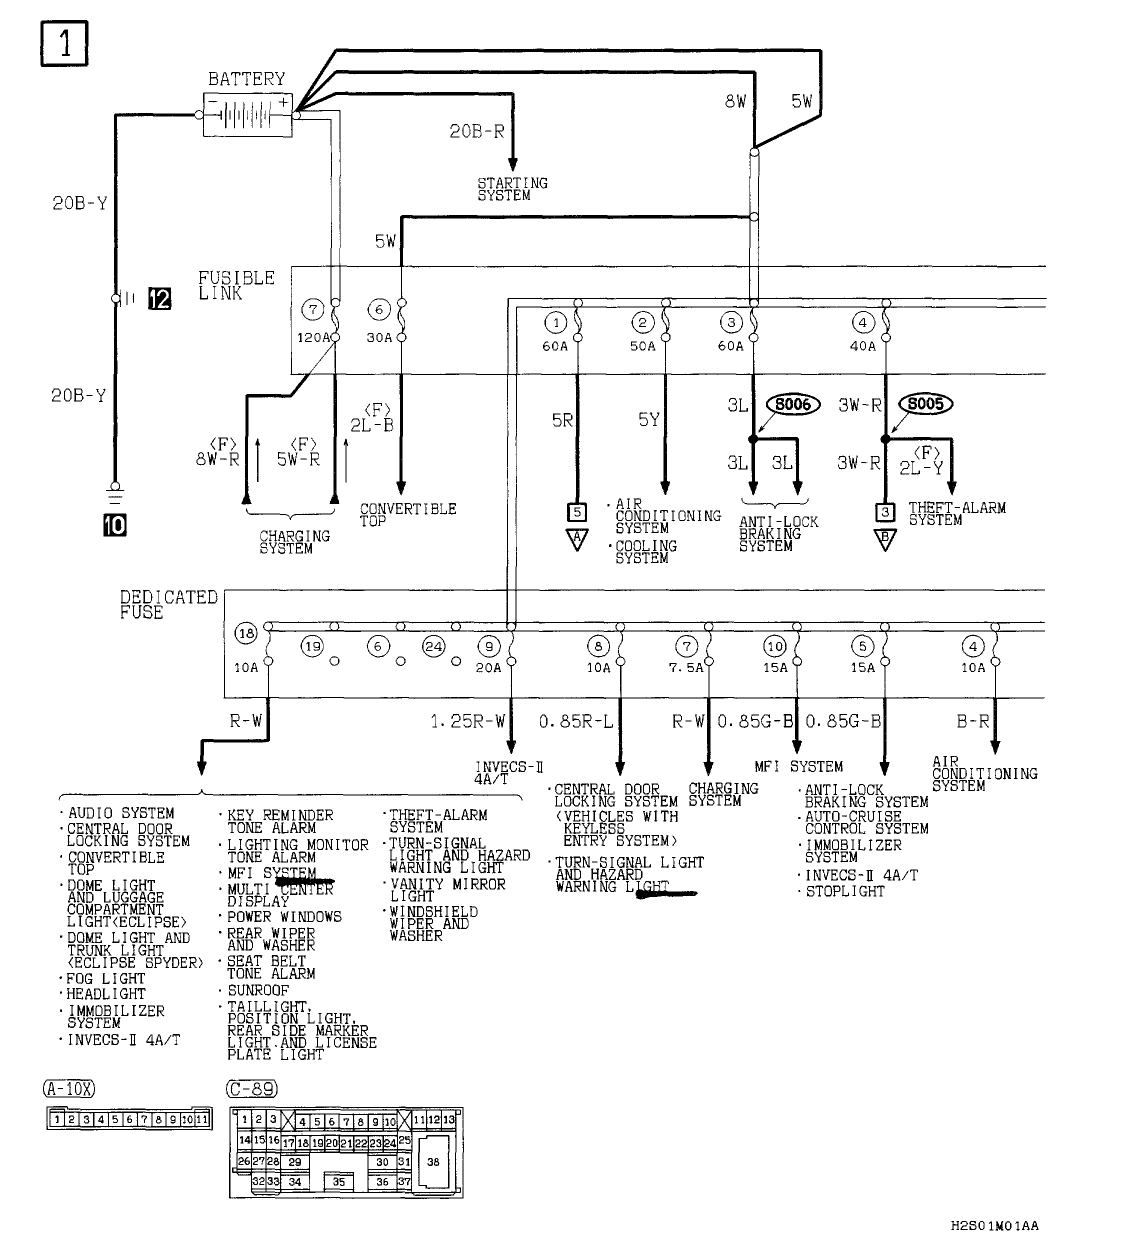 [MOBILIA] 1996 Mitsubishi Eclipse Spyder Fuse Box Diagram ...